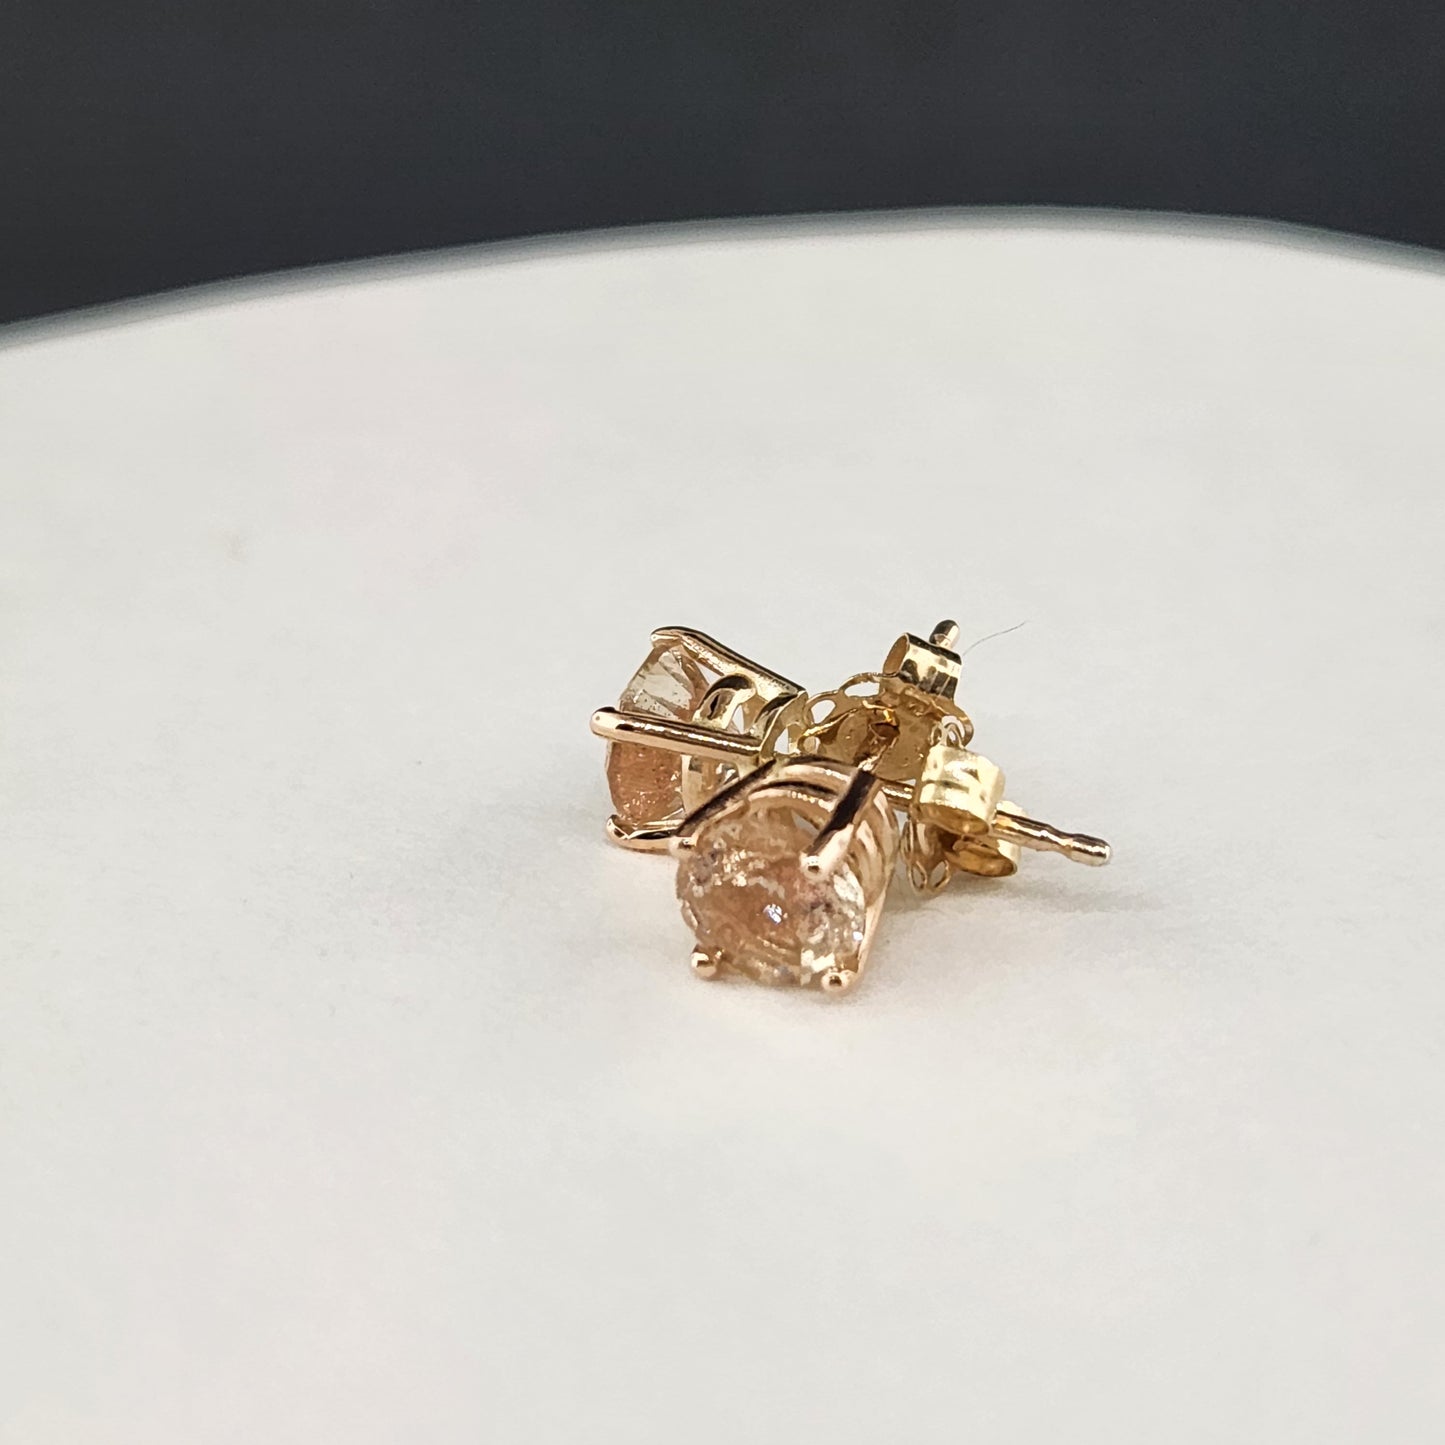 0.90 ct Oregon Sunstones earring set in 14 kt pink gold. 5 mm